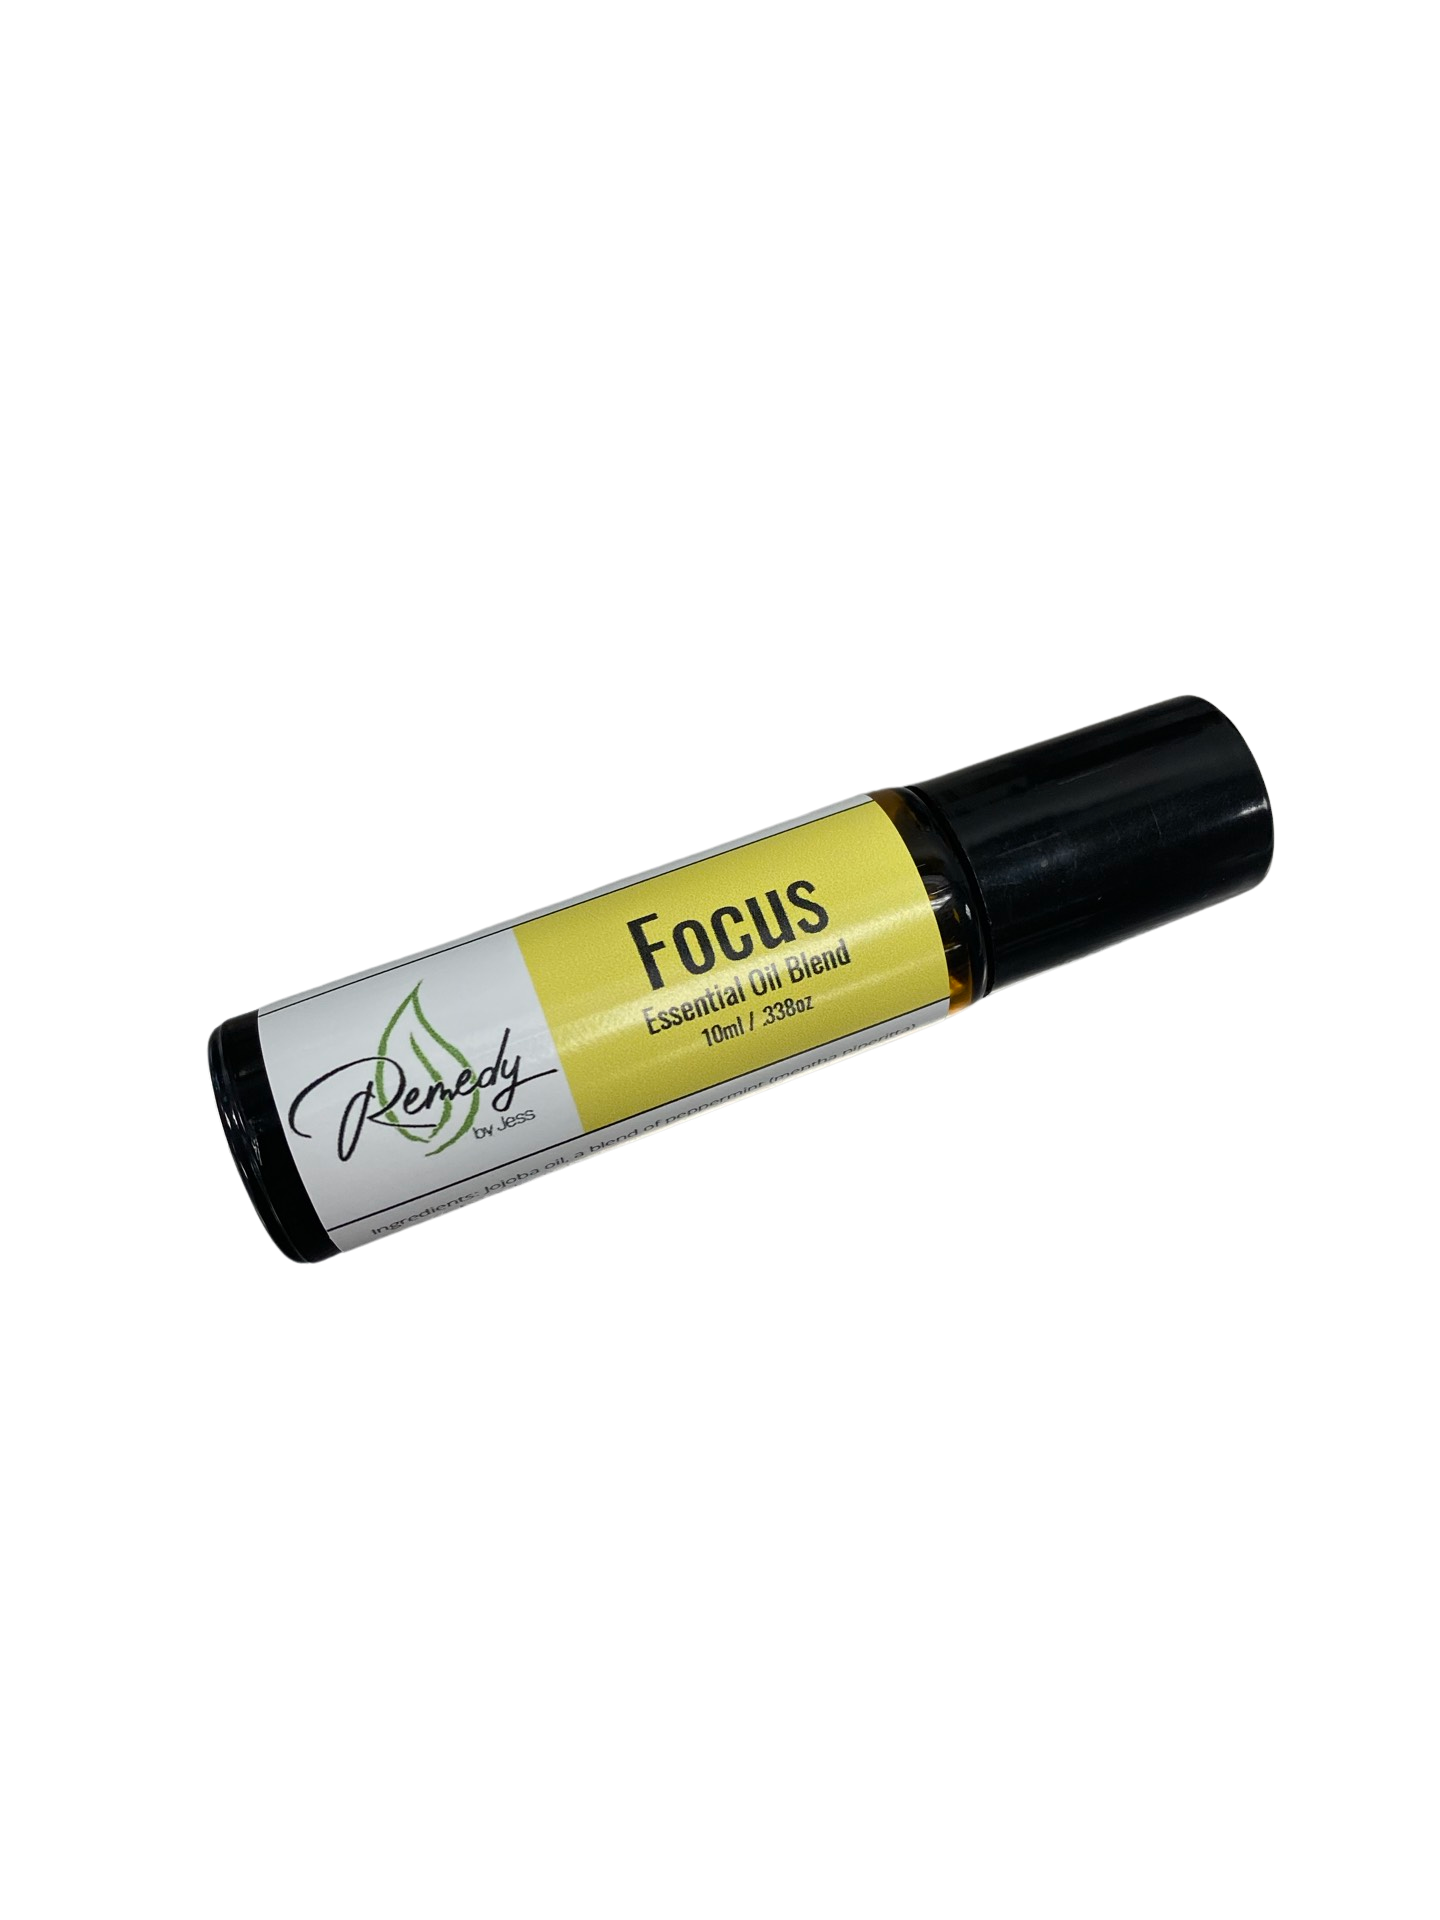 Focus Essential Oil Roller